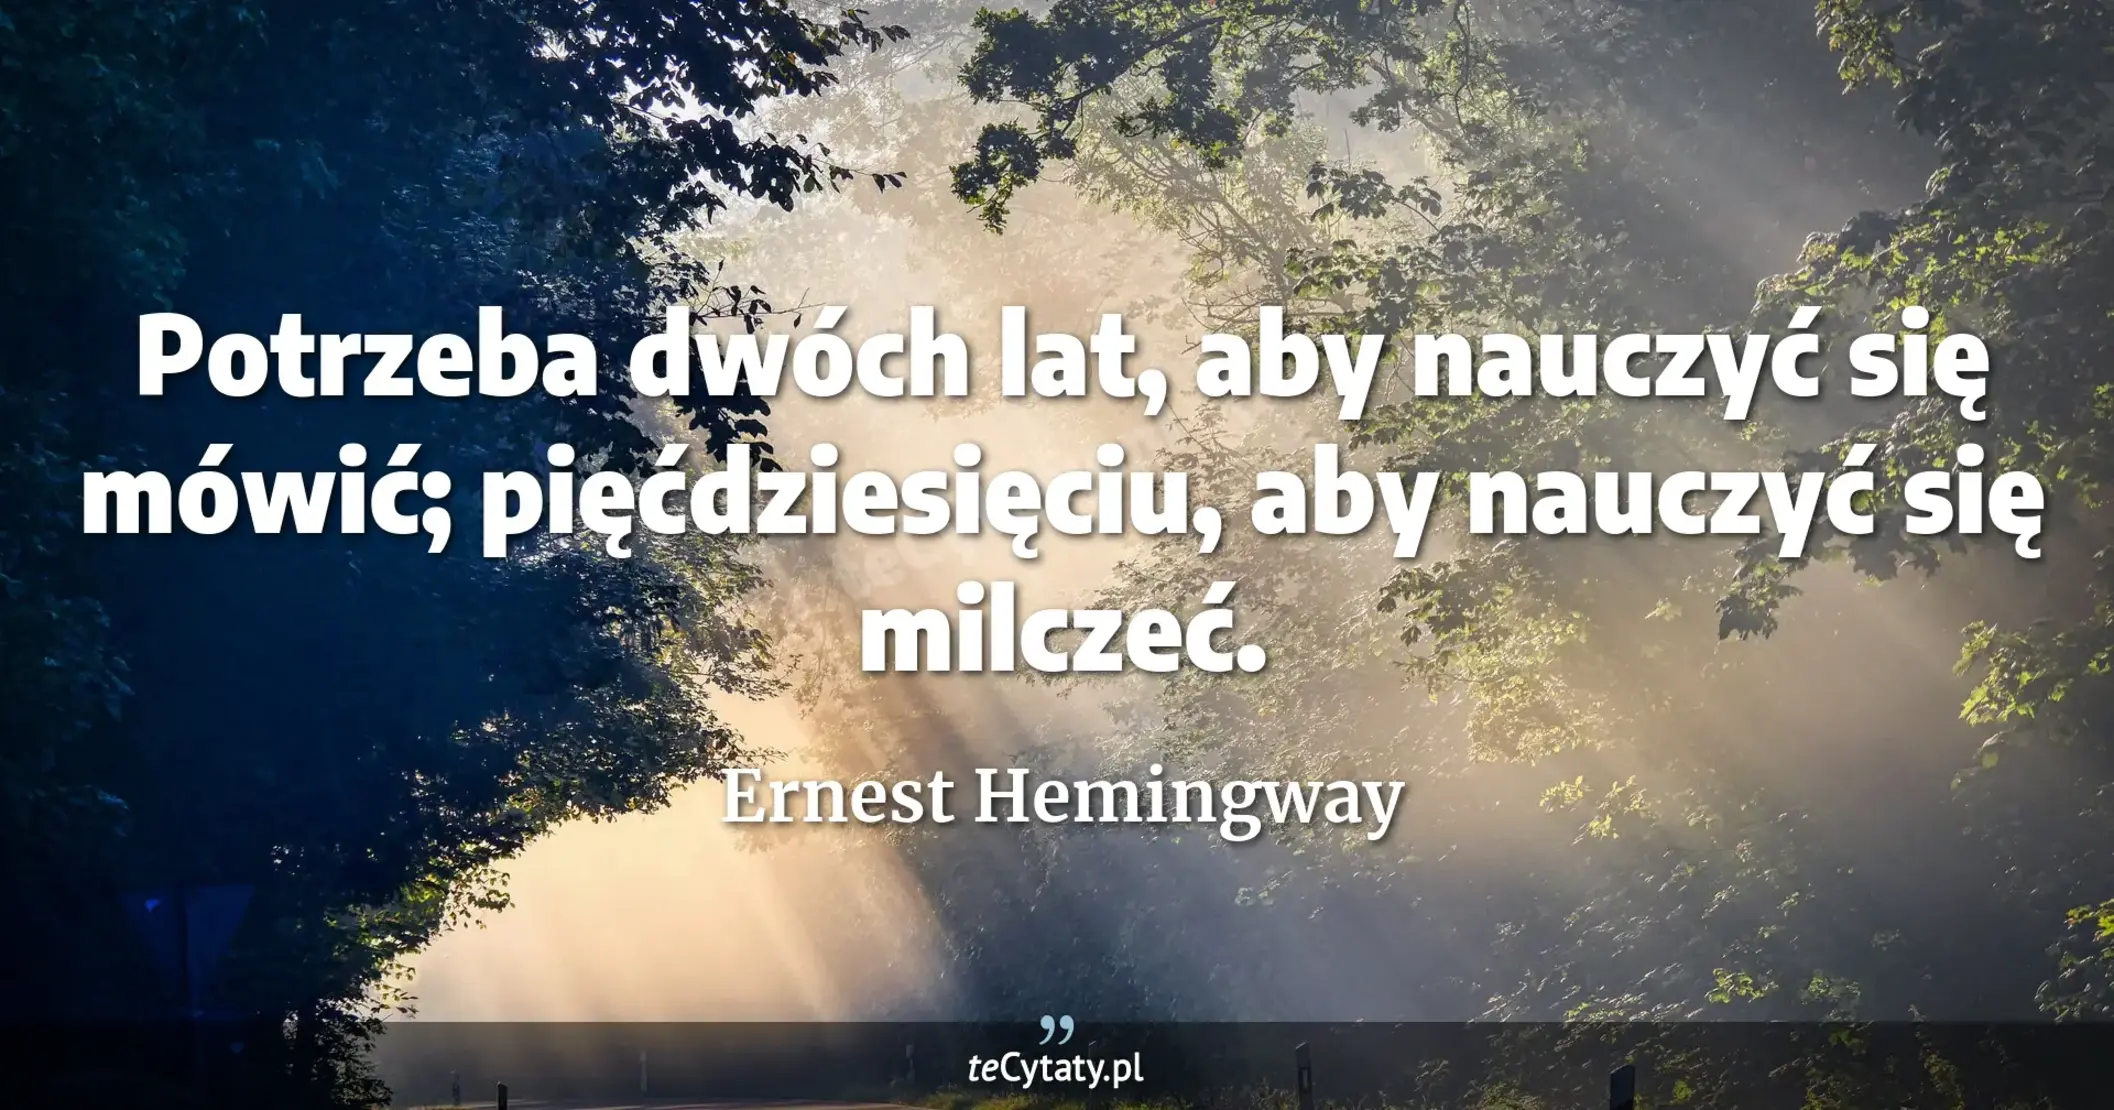 Potrzeba dwóch lat, aby nauczyć się mówić; pięćdziesięciu, aby nauczyć się milczeć. - Ernest Hemingway